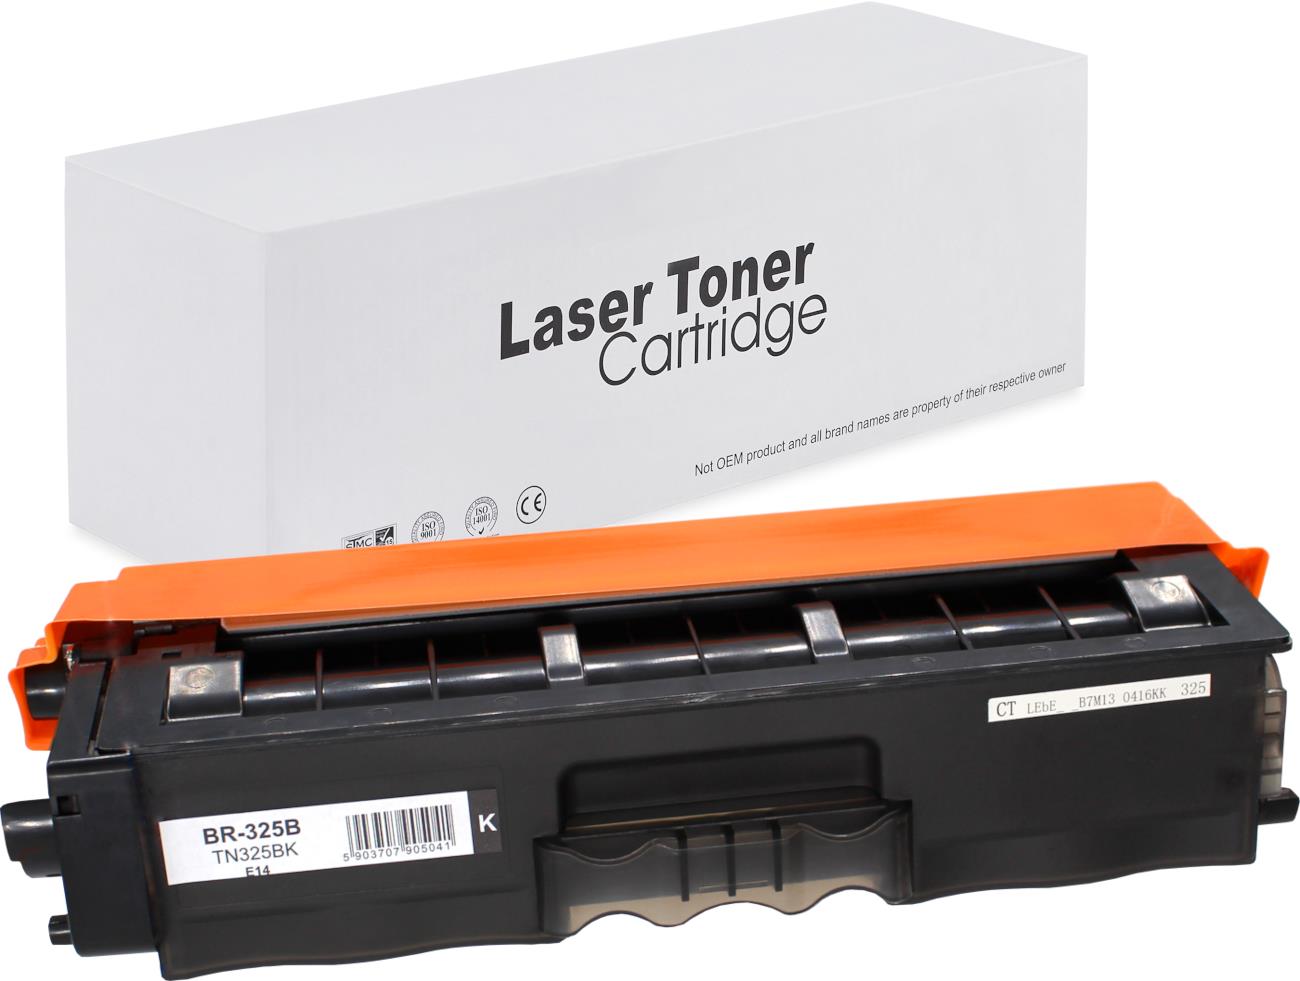 съвместима тонер касета за принтери и печатащи устройства на Brother HL-4150 CDN Toner BR-325B | TN325BK. Ниски цени, прецизно изпълнение, високо качество.